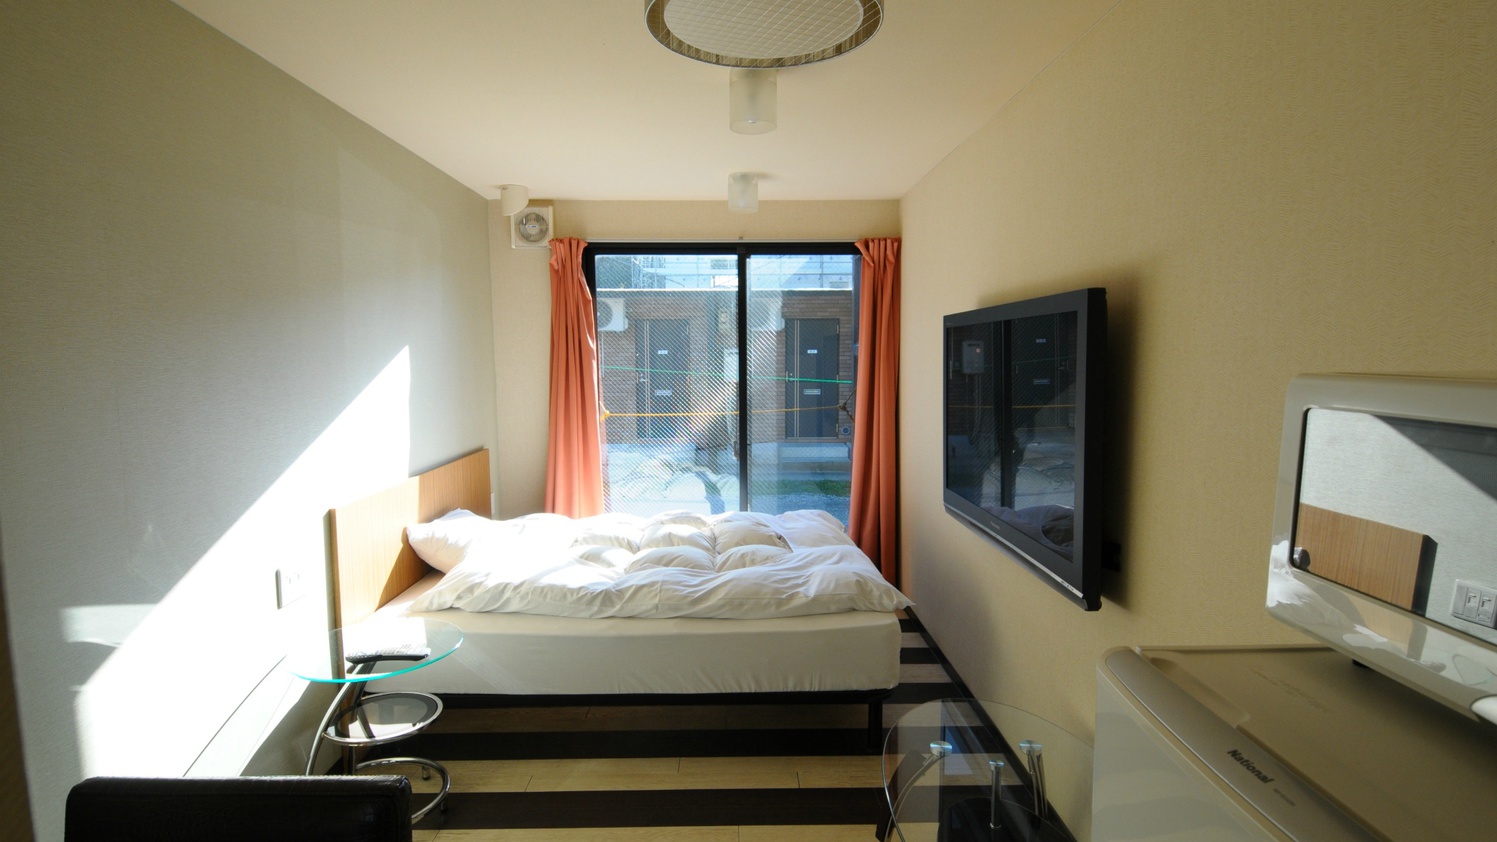  ダブルルーム：広々クイーンサイズベッドを完備。すっきりコンパクトで快適な機能性を重視のお部屋です。